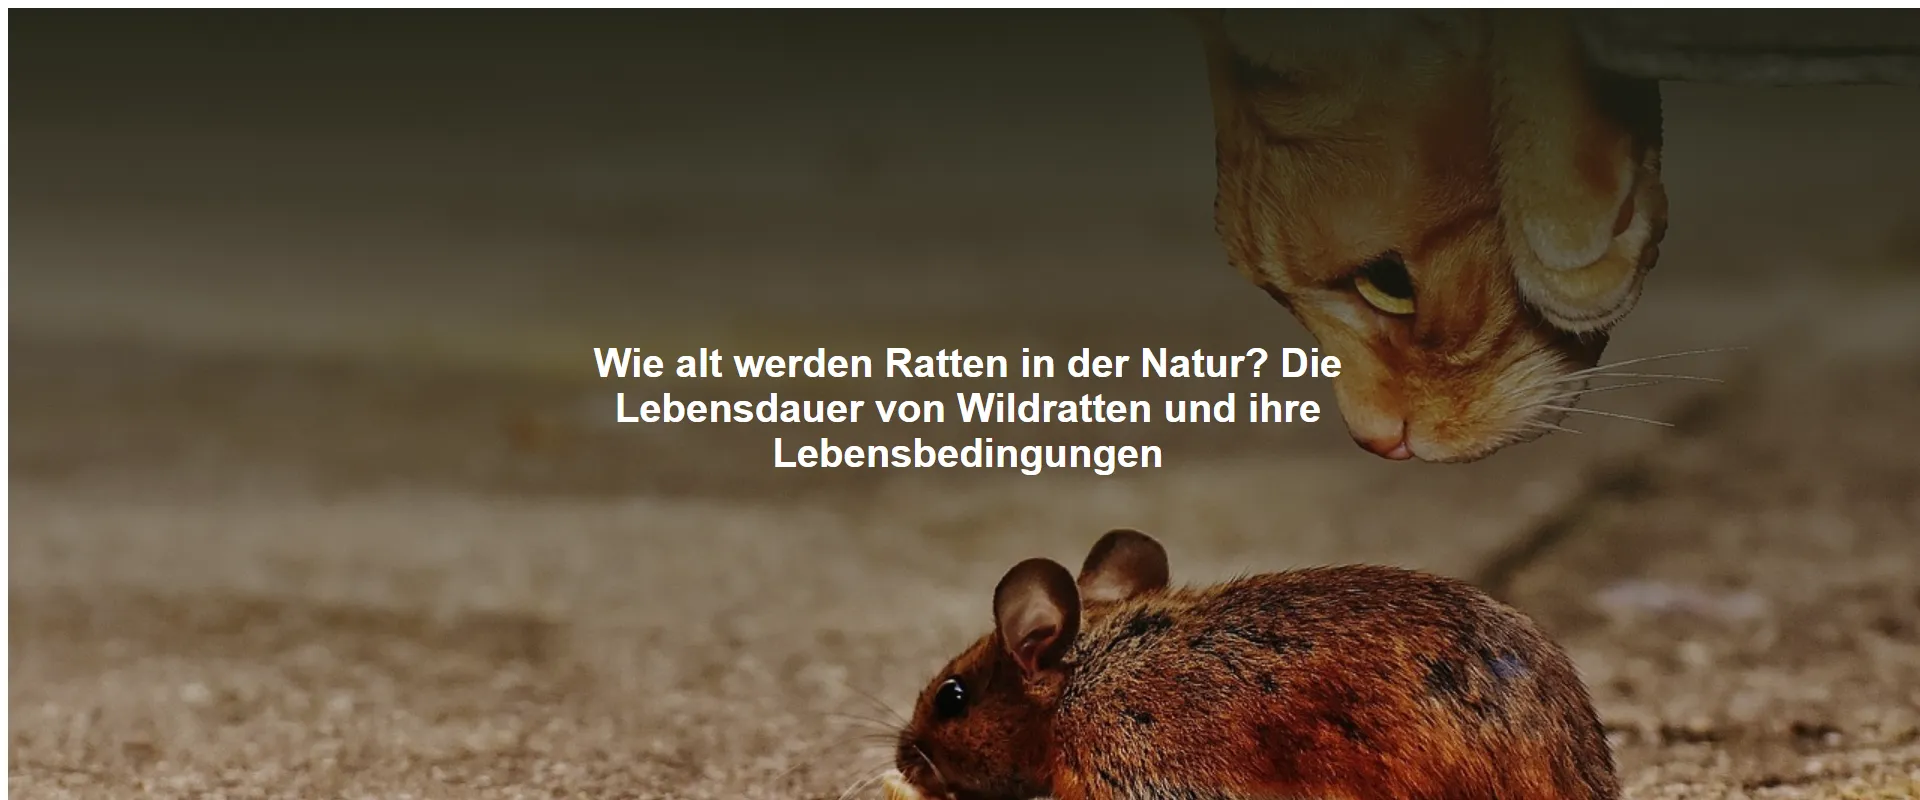 Wie alt werden Ratten in der Natur? Die Lebensdauer von Wildratten und ihre Lebensbedingungen